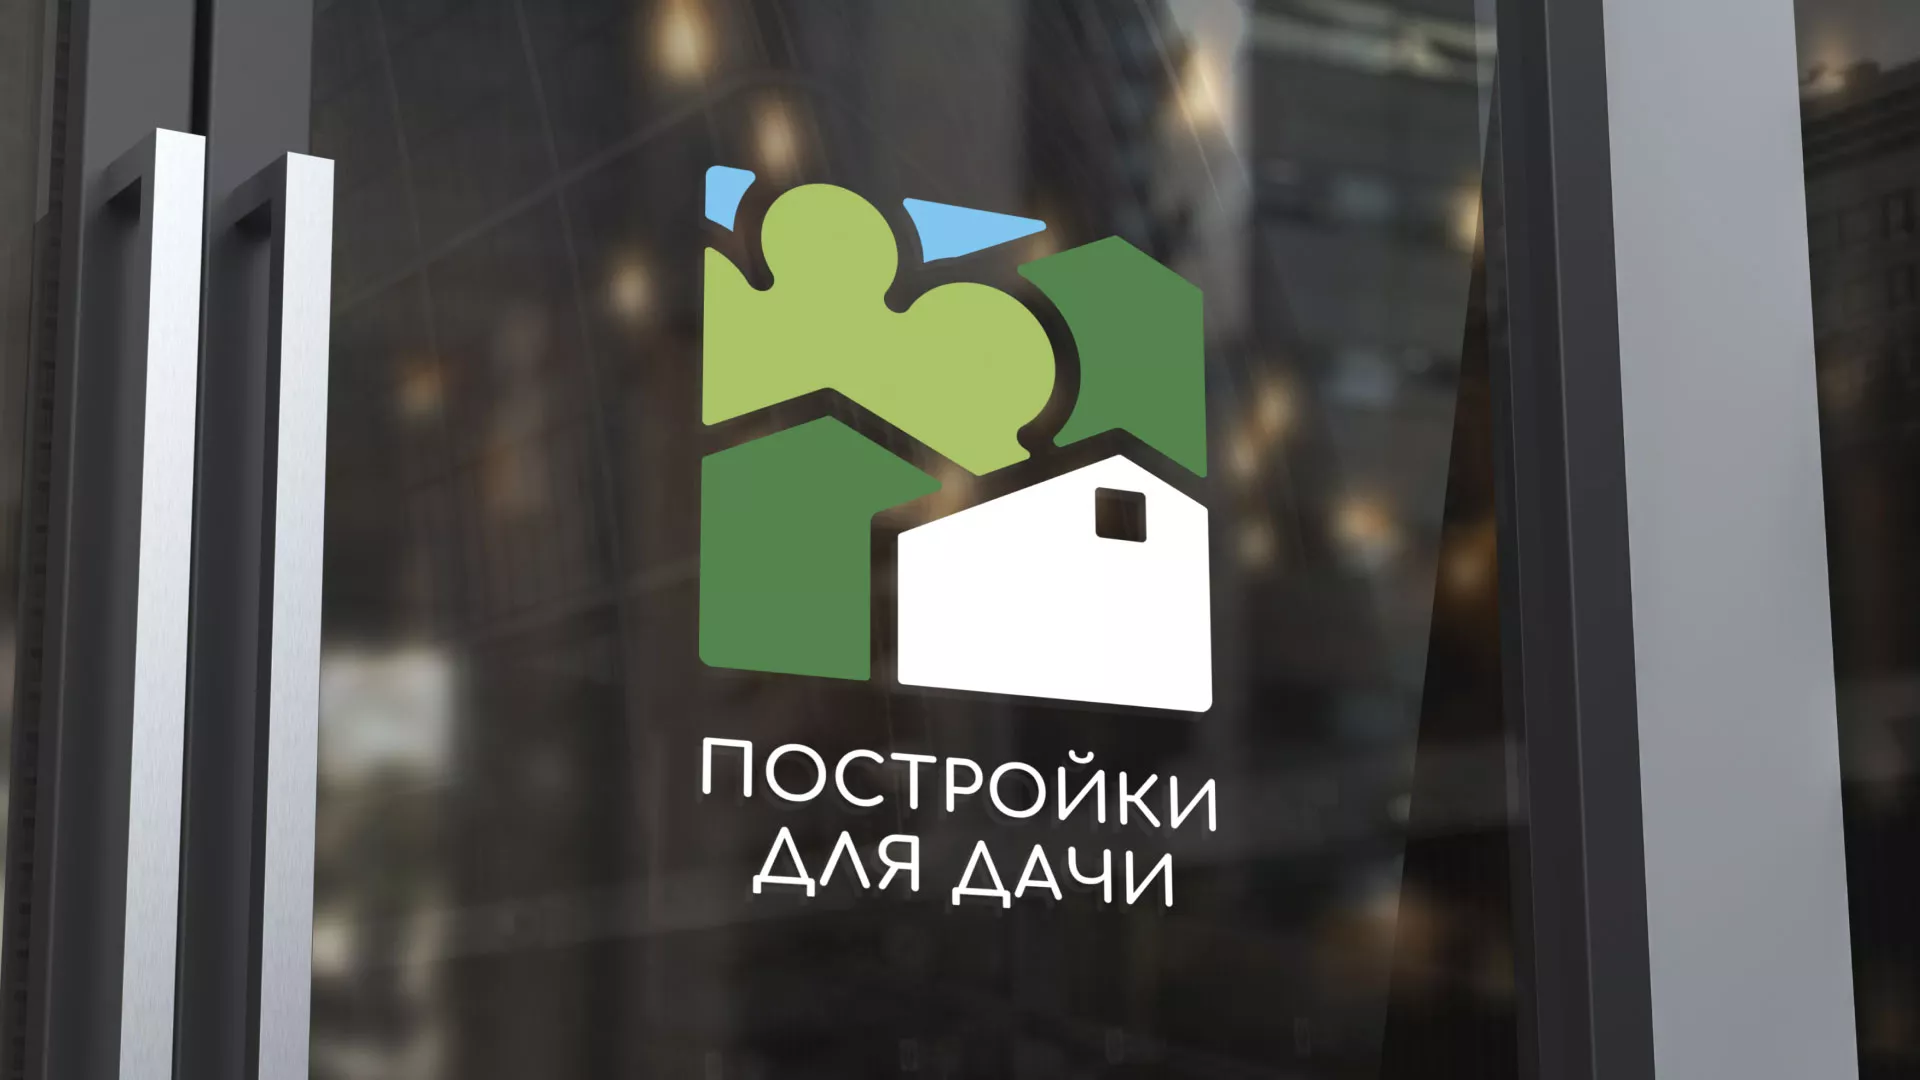 Разработка логотипа в Шарье для компании «Постройки для дачи»